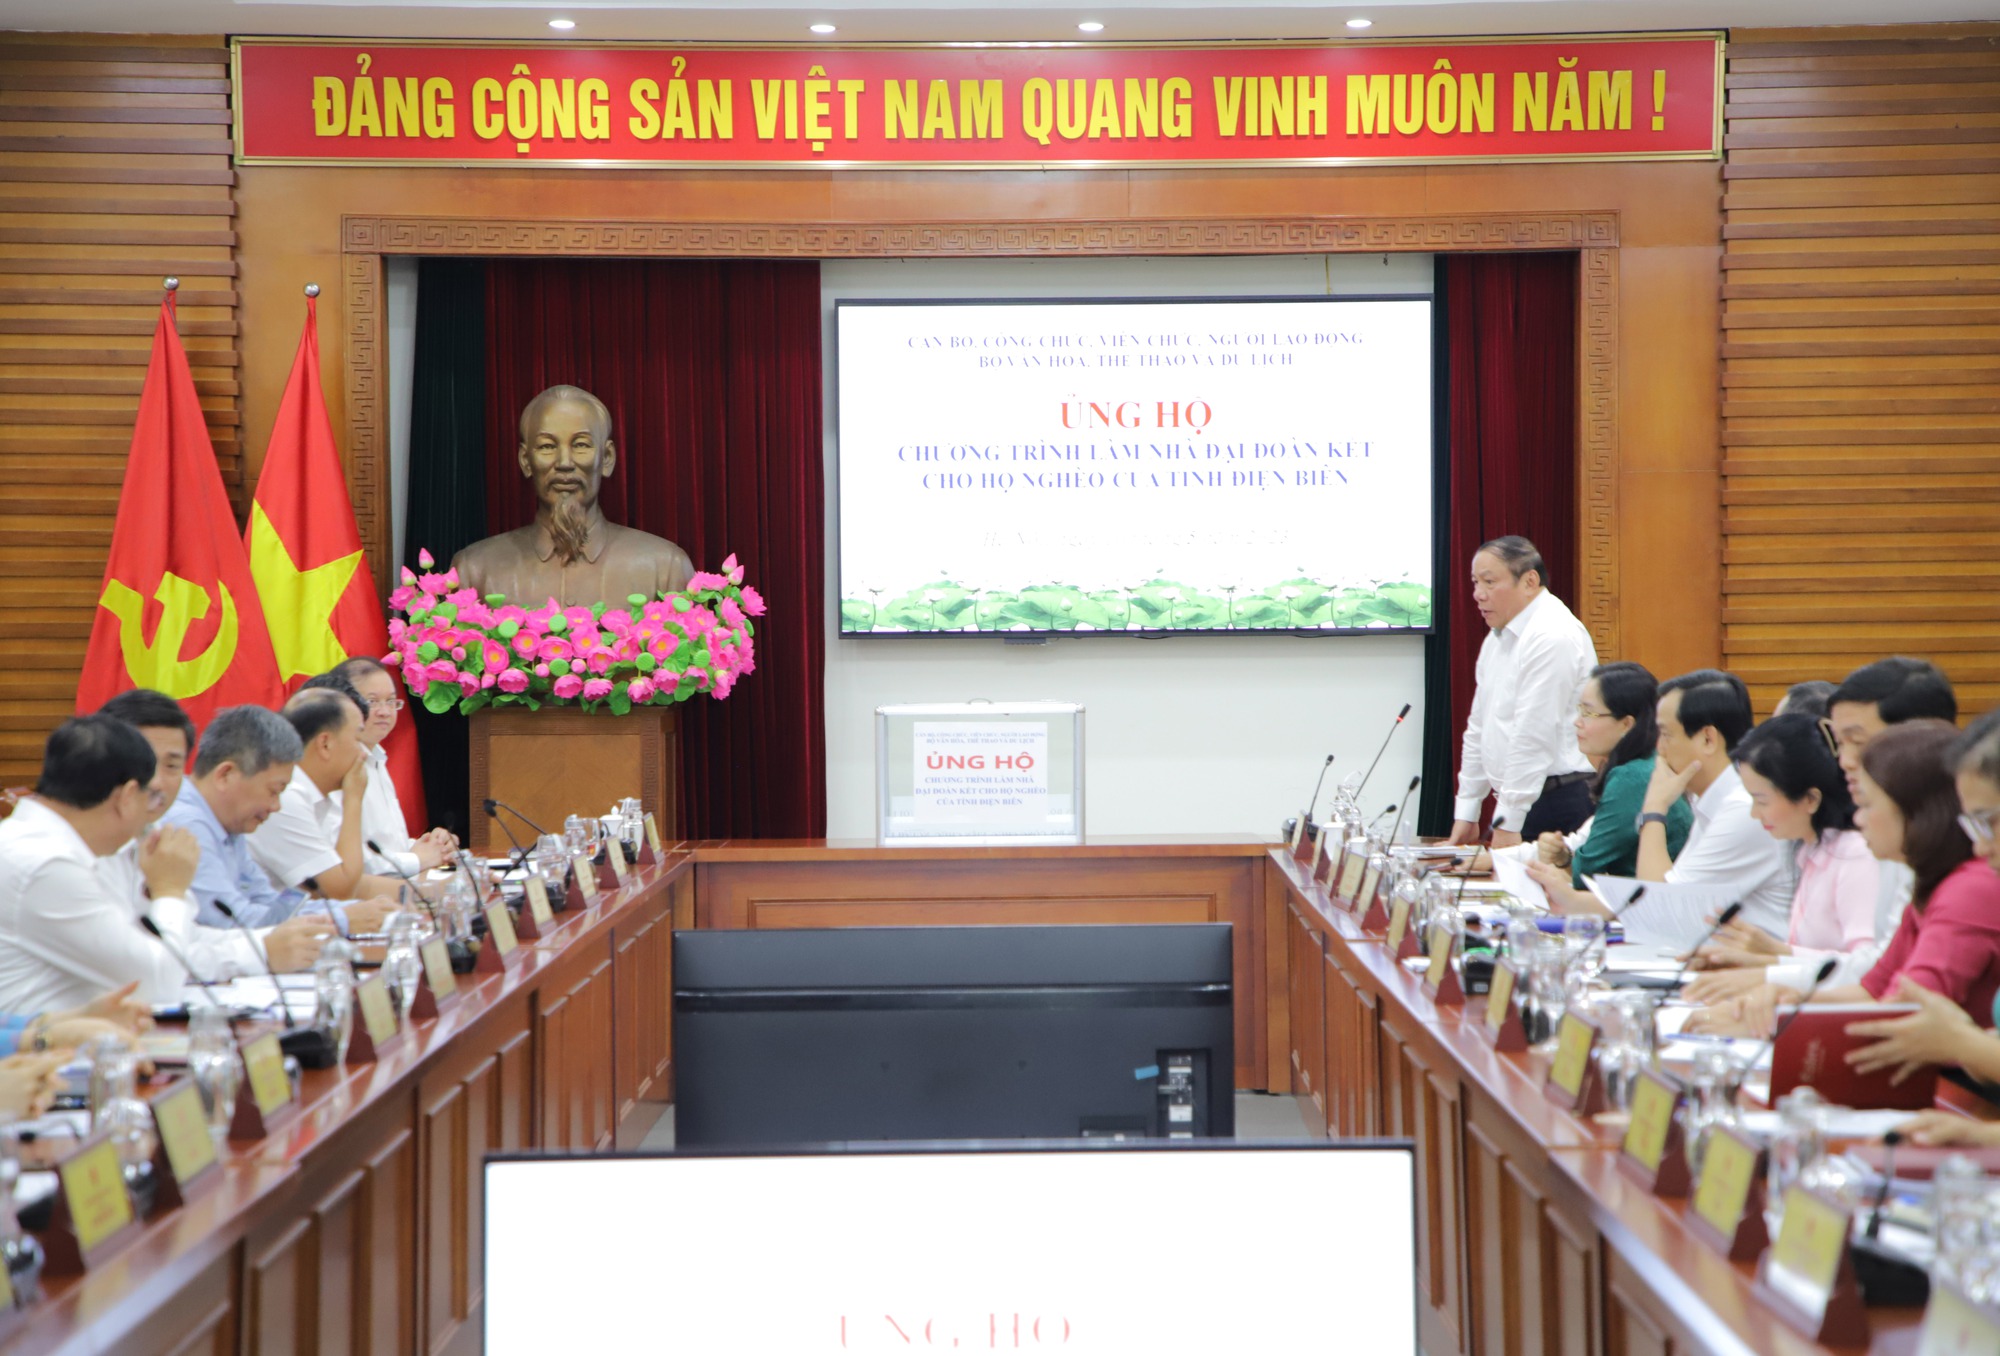 Bộ VHTTDL ủng hộ Chương trình xây nhà đại đoàn kết cho hộ nghèo của tỉnh Điện Biên - Ảnh 1.